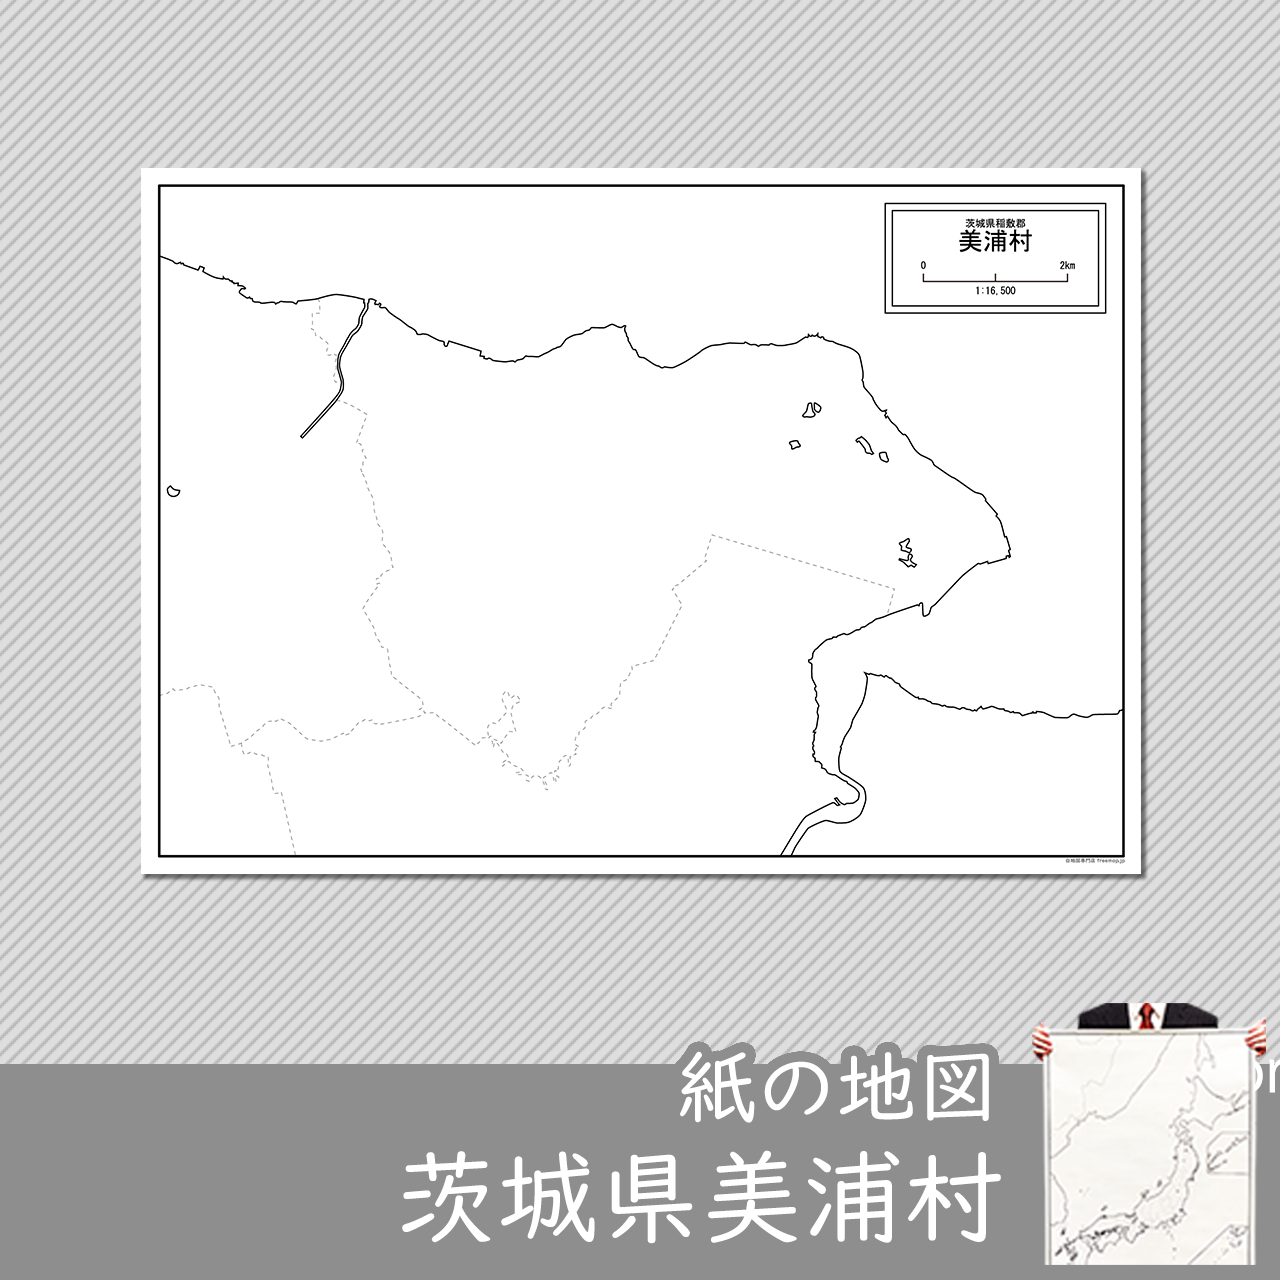 美浦村の紙の白地図のサムネイル